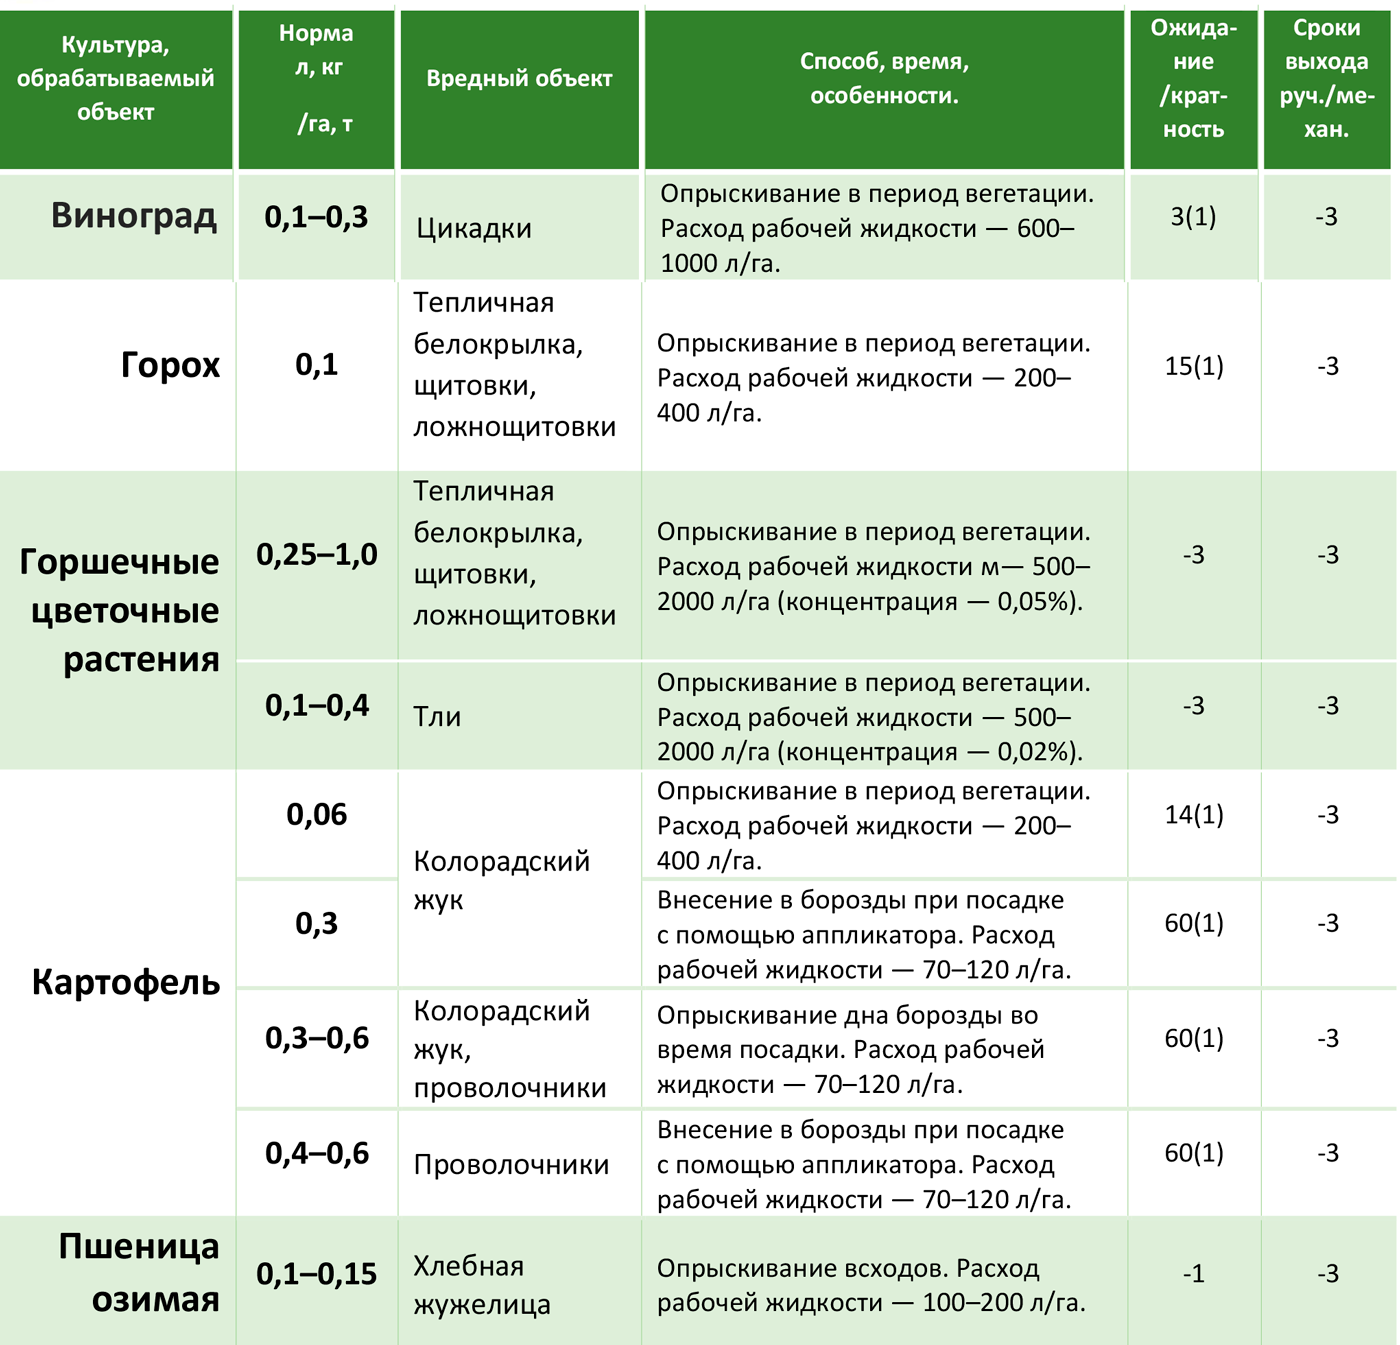 Инструкция по применению и состав гербицида Пропонит, дозировка и аналоги